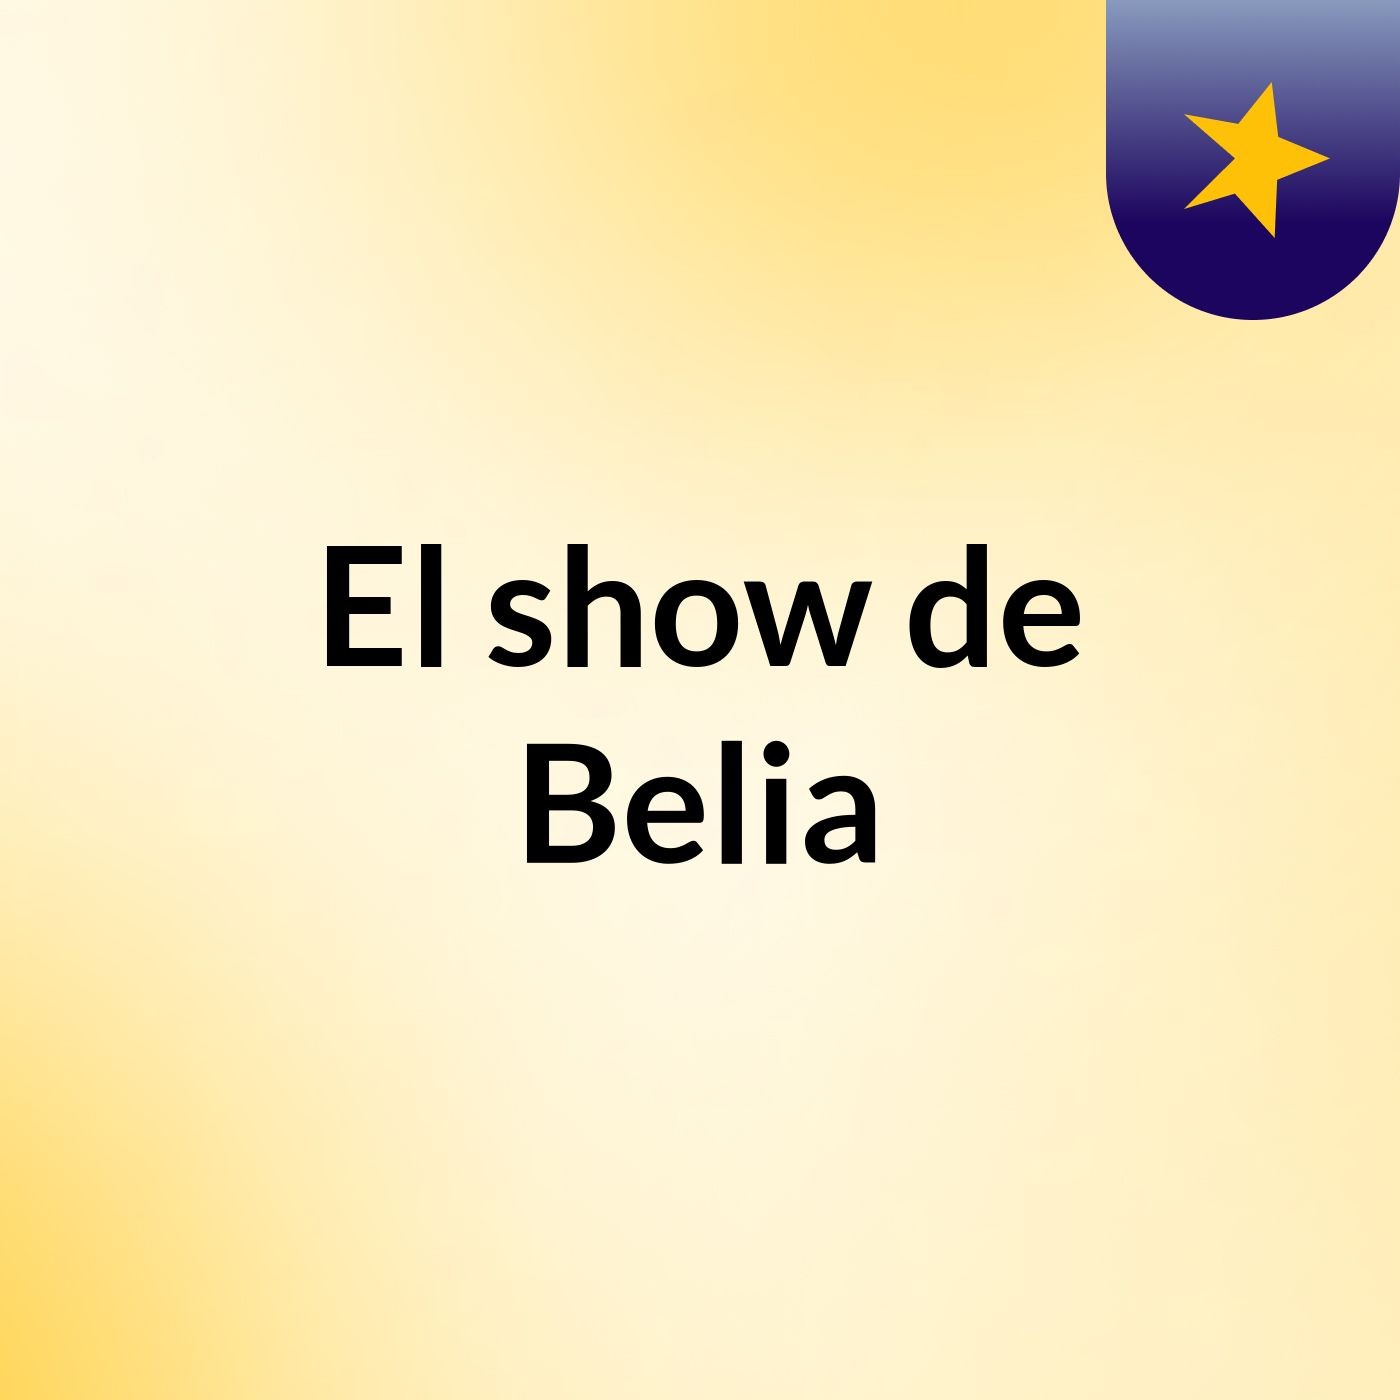 El show de Belia